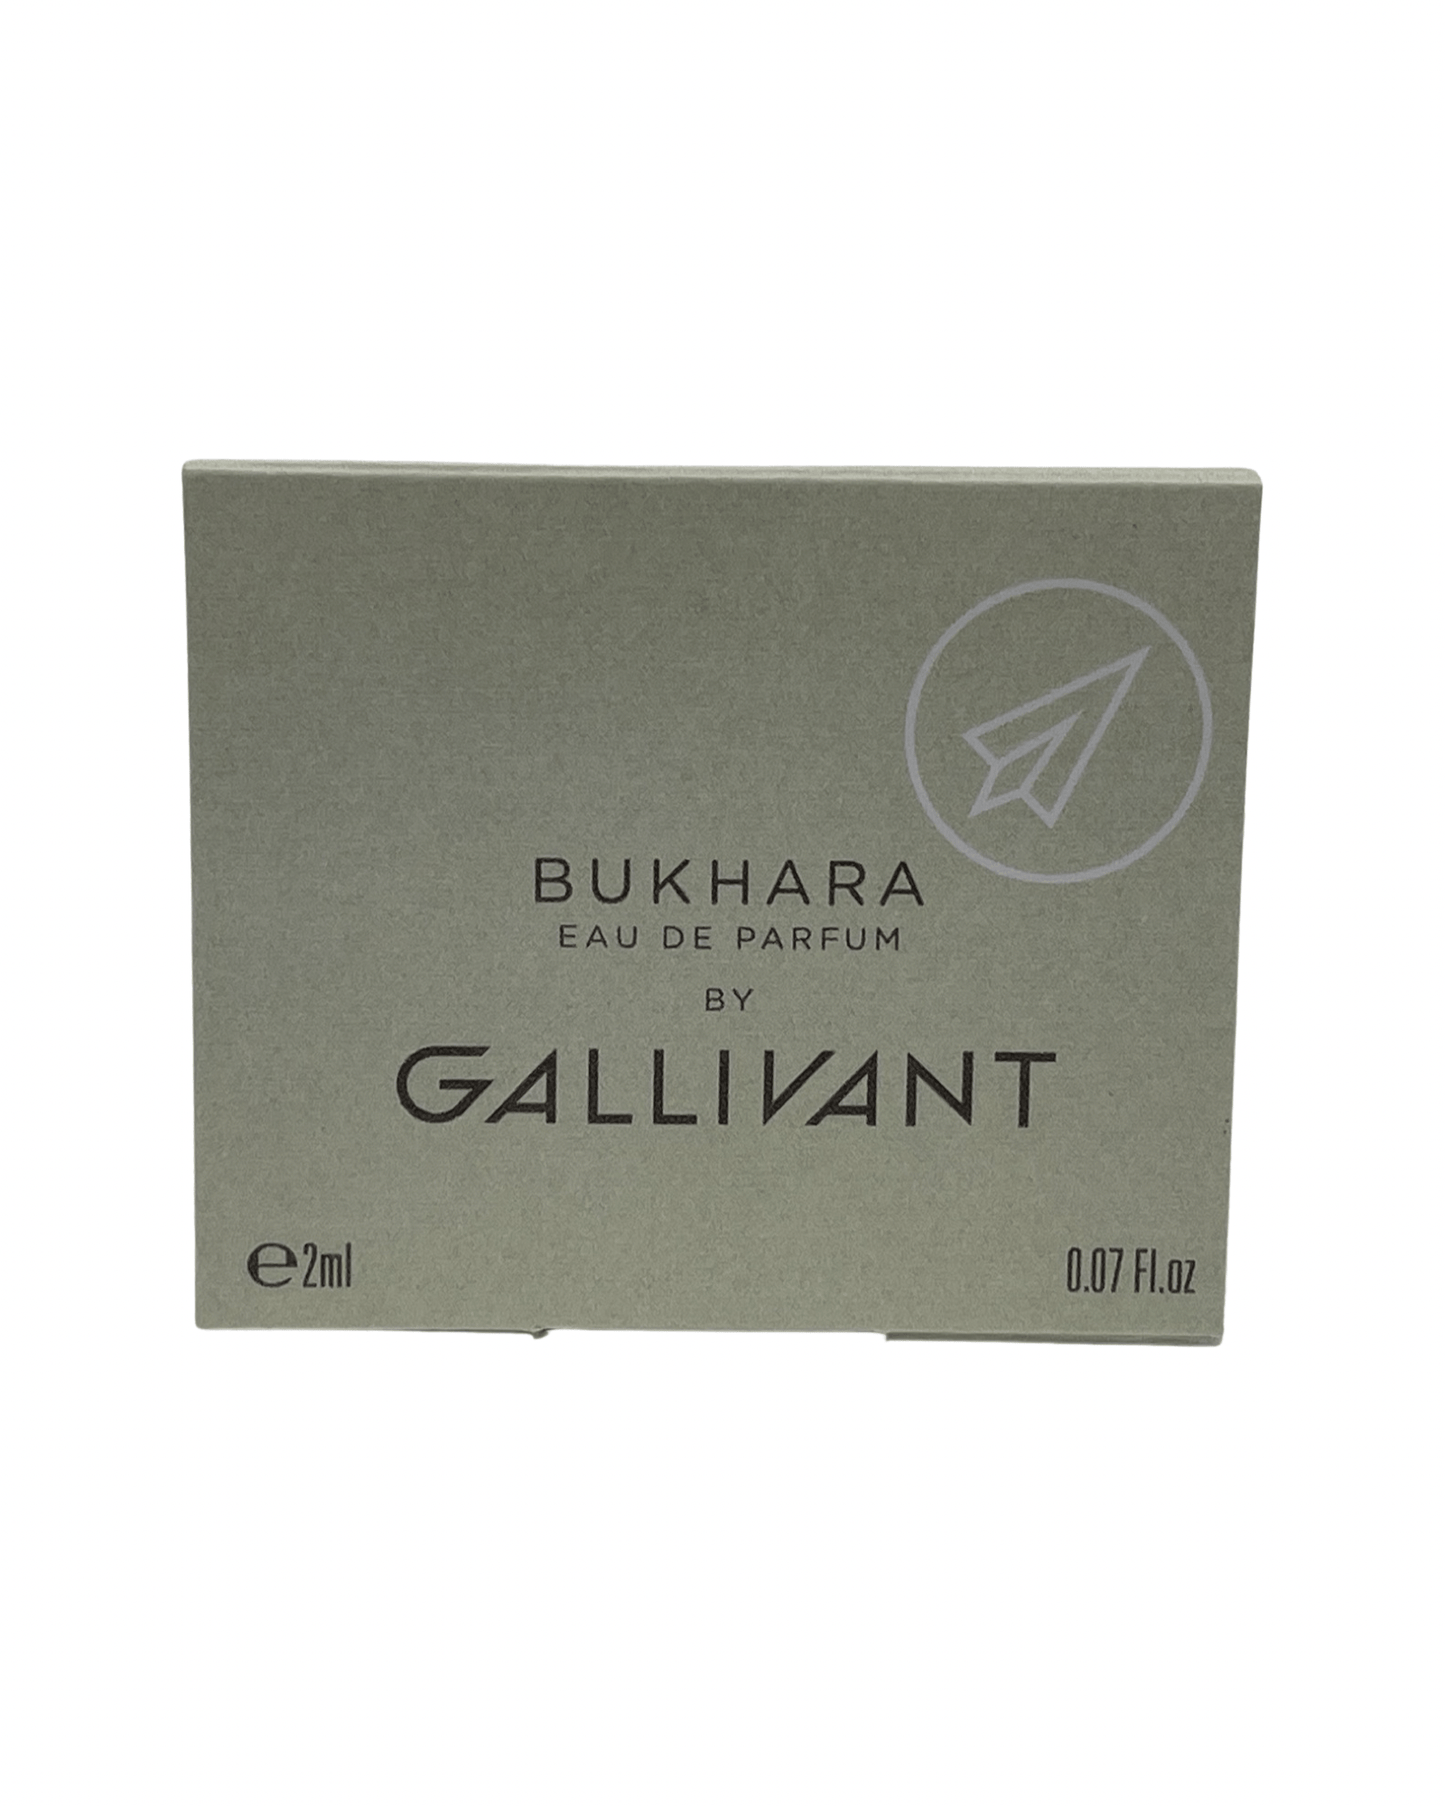 Gallivant - Bukhara - 2ml.